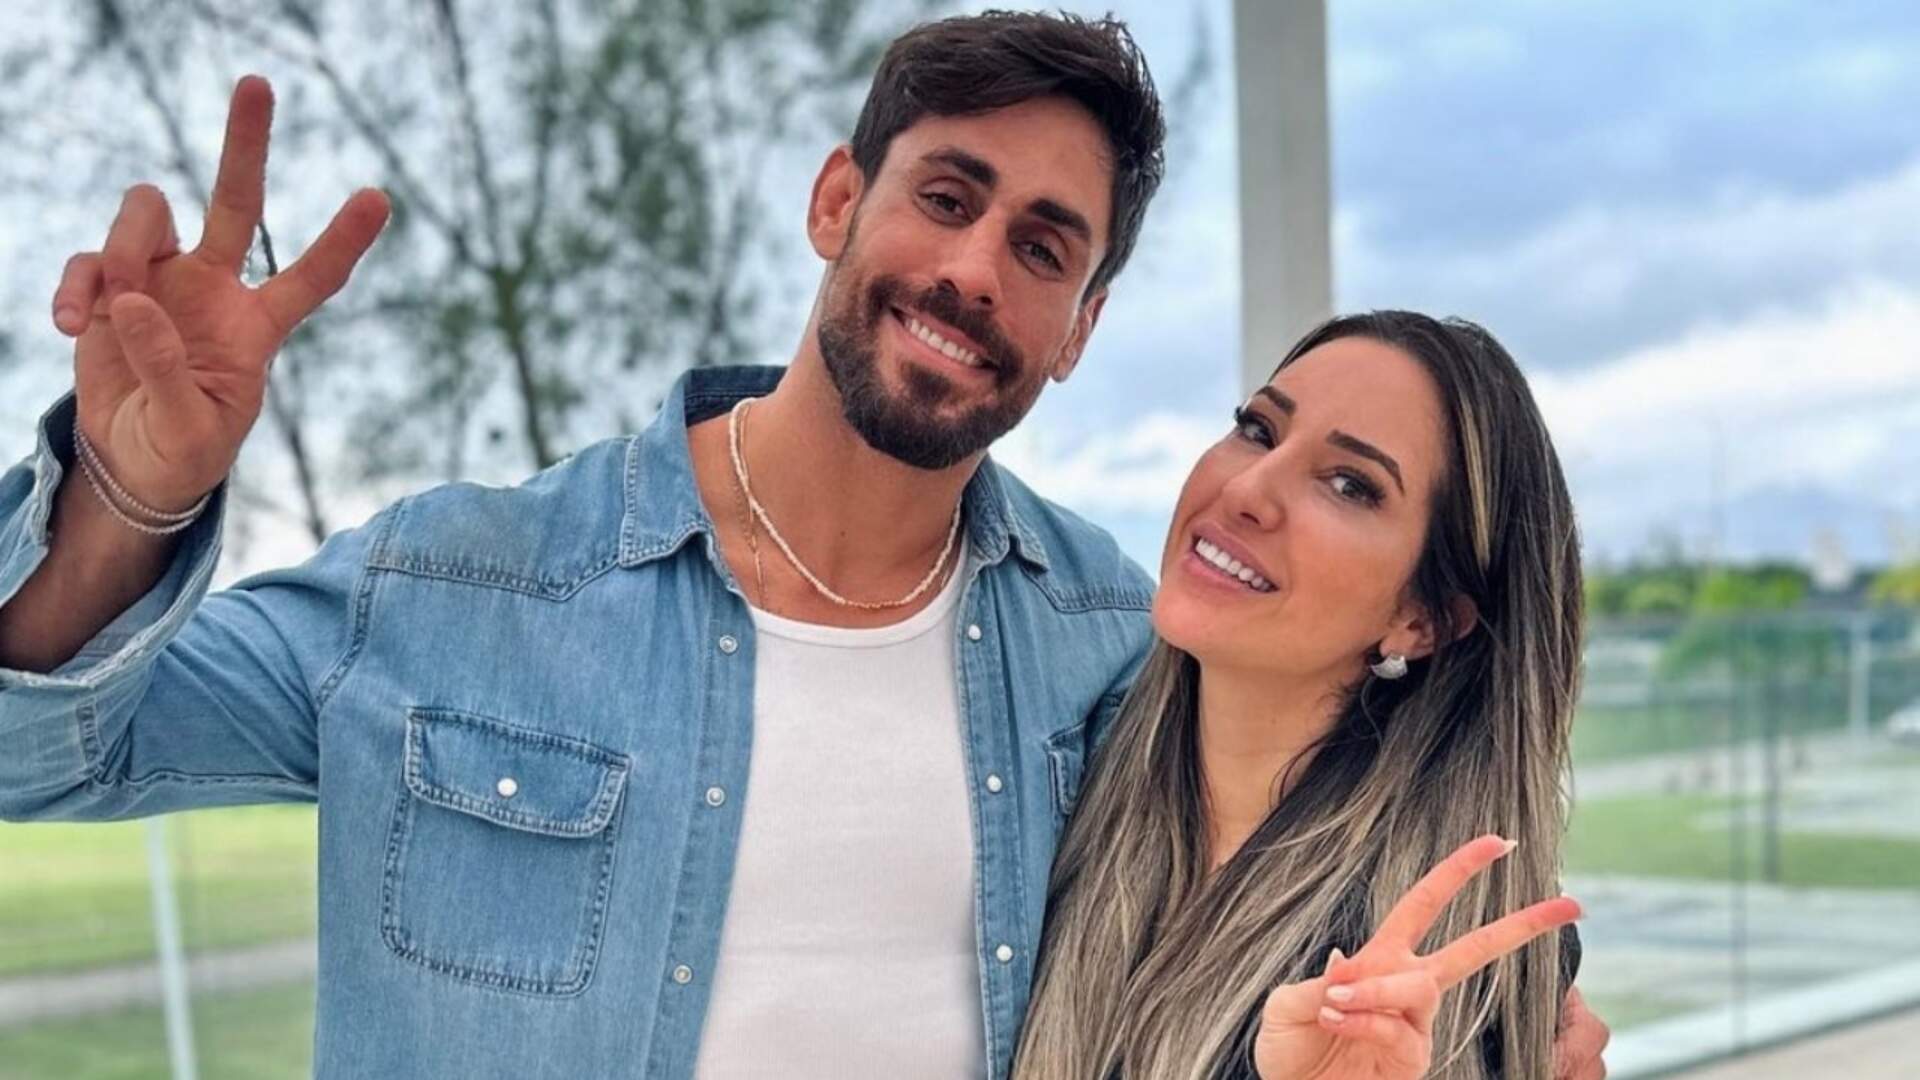 Após boatos sobre namoro com Amanda Meirelles, Cara de Sapato esclarece relação e expõe conversa íntima - Metropolitana FM